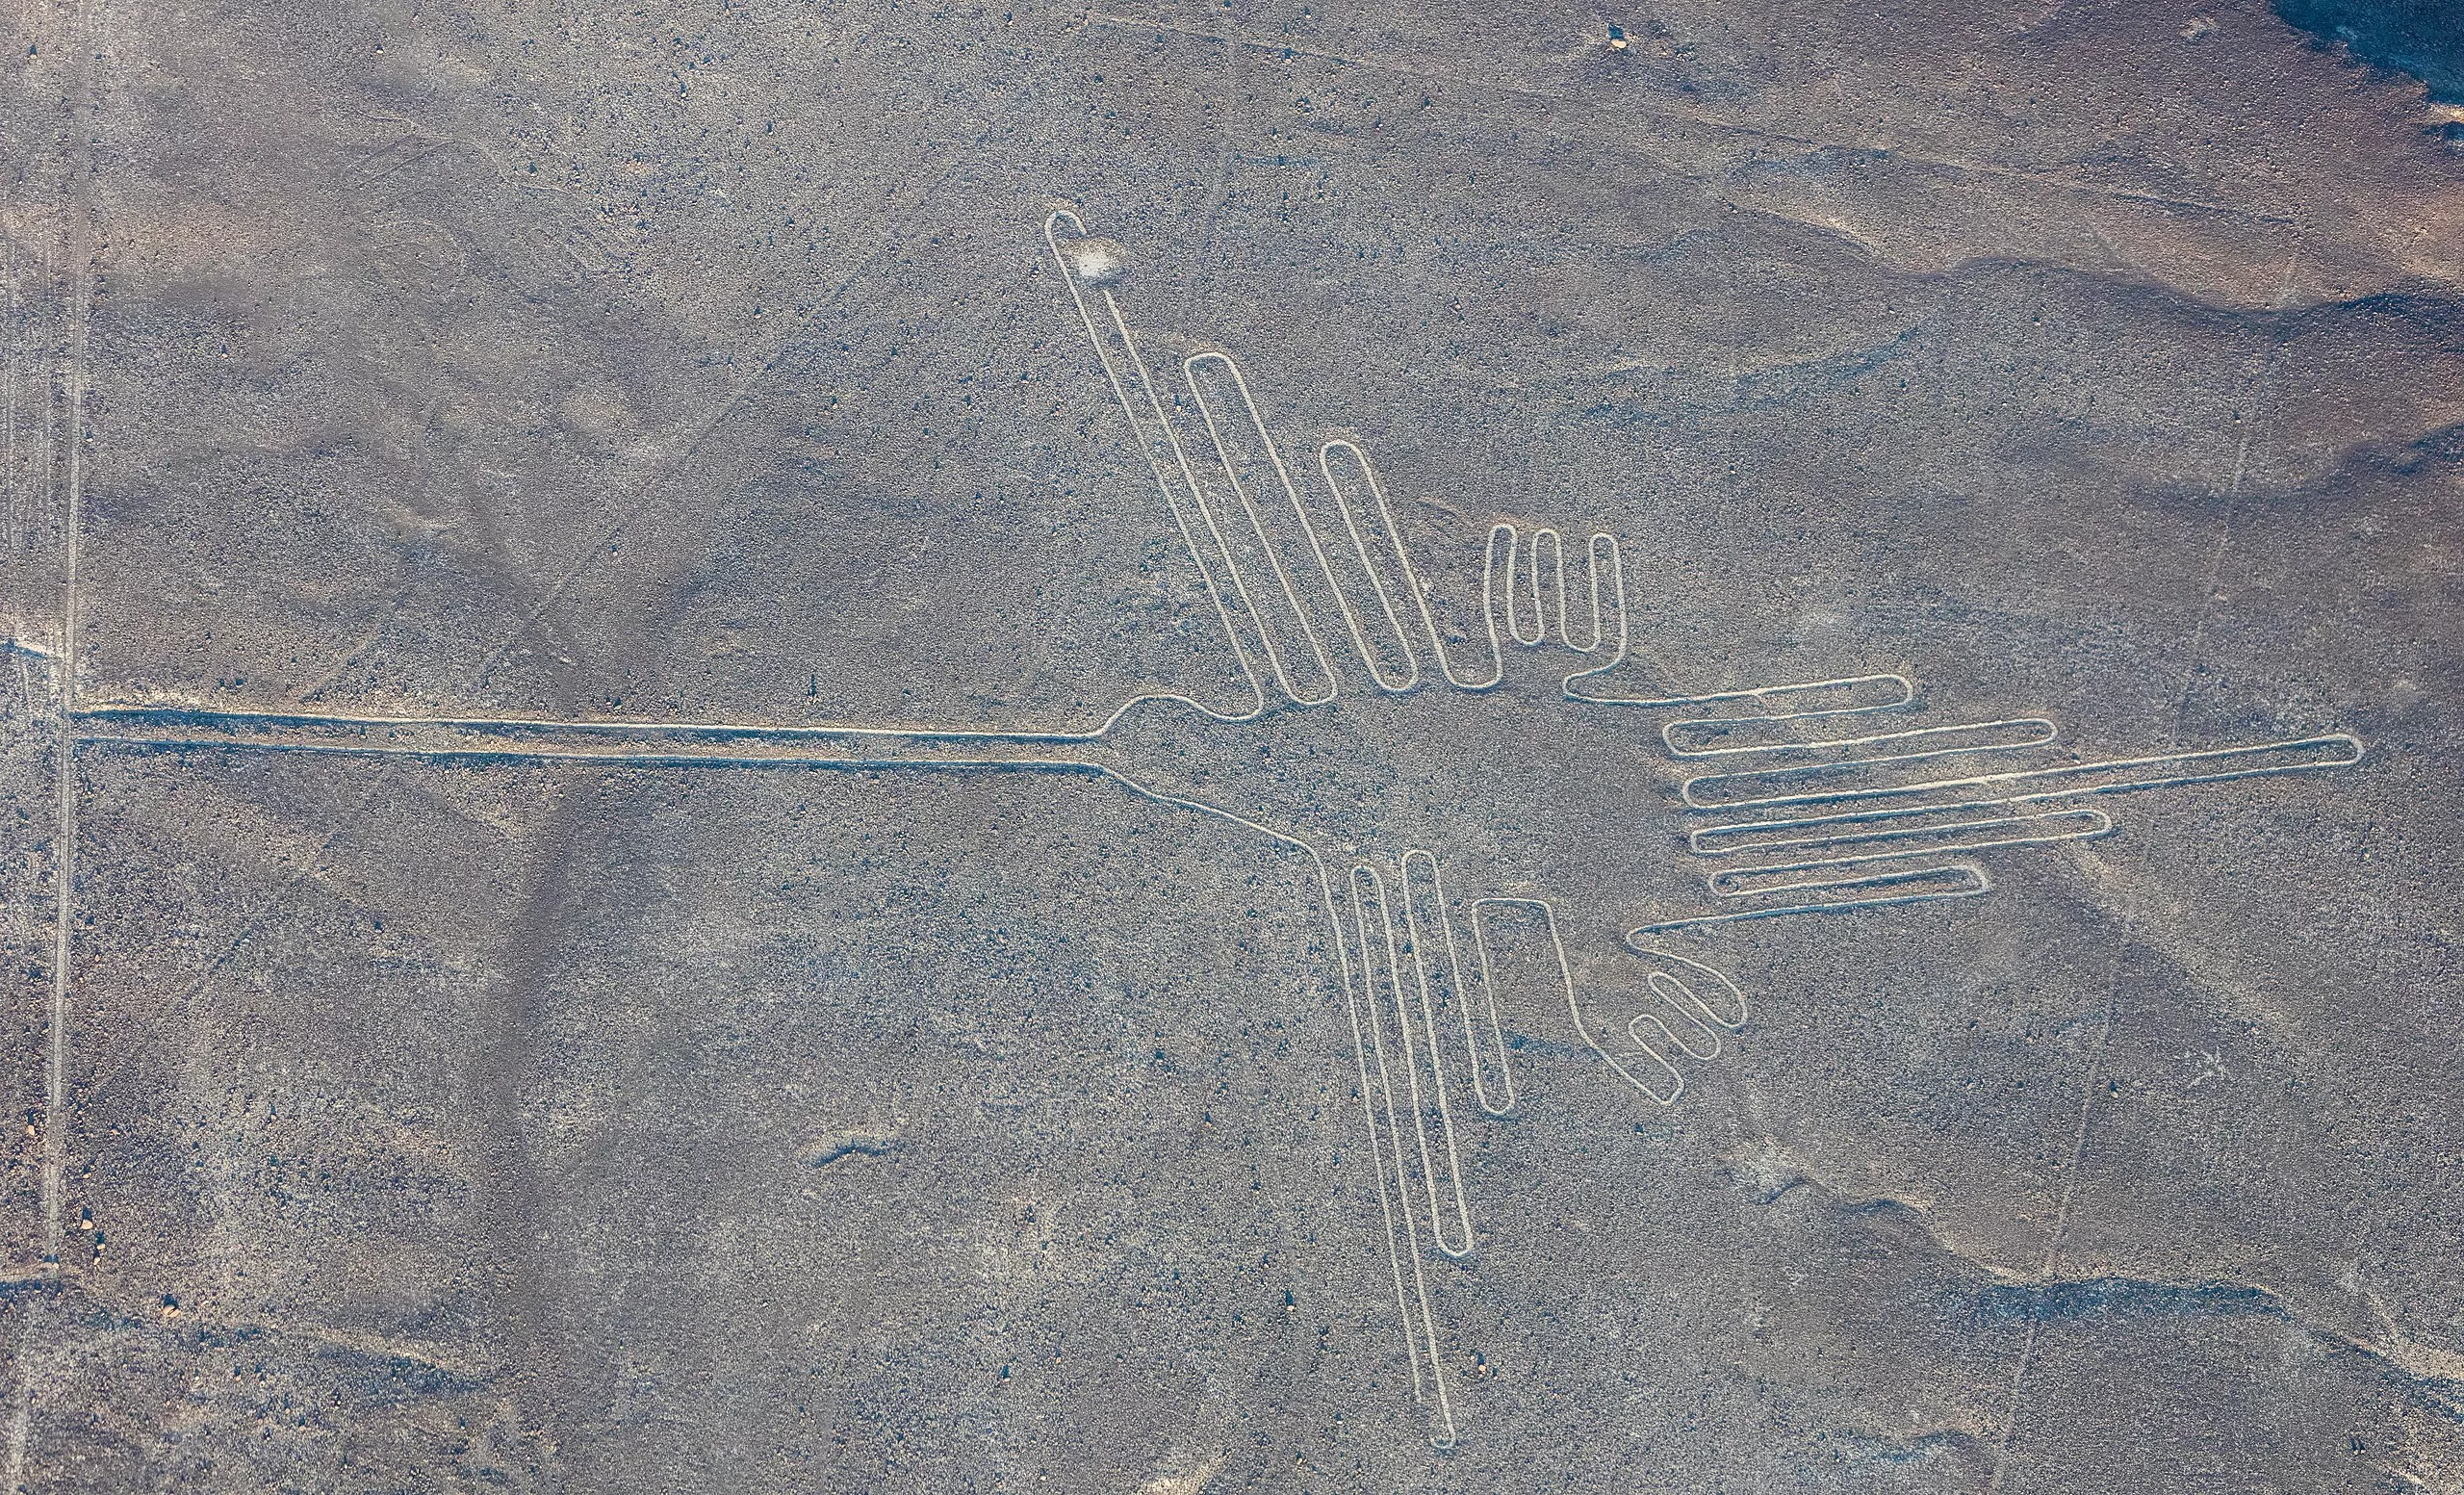 Les línies de Nazca són un conjunt de dibuixos i línies de mides colossals que han donat peu a les més variades teories científiques i les més atrevides explicacions místiques